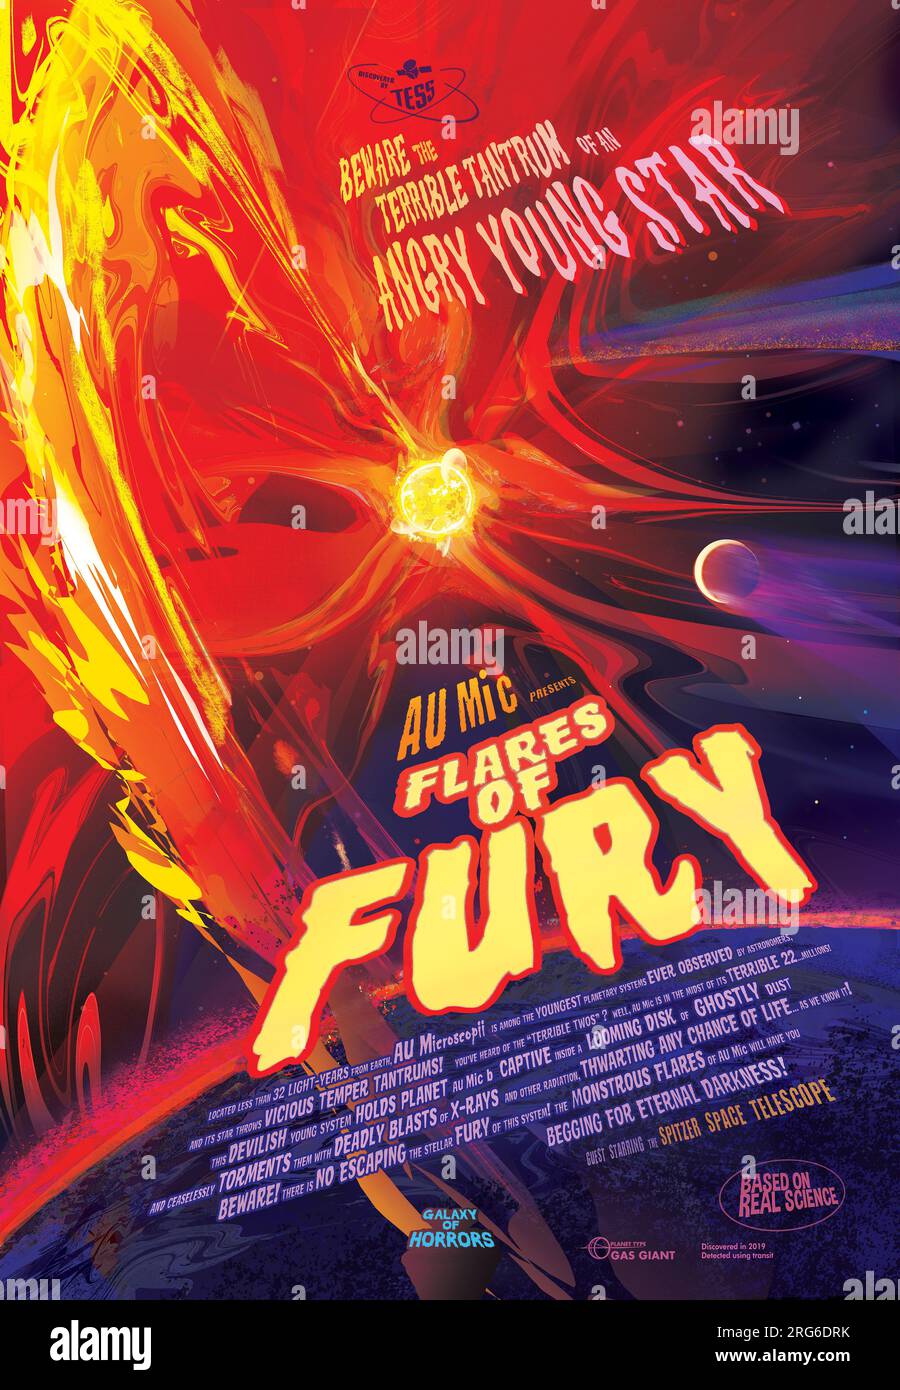 Flares of Fury Poster, AU Microscopii. Stock Photo